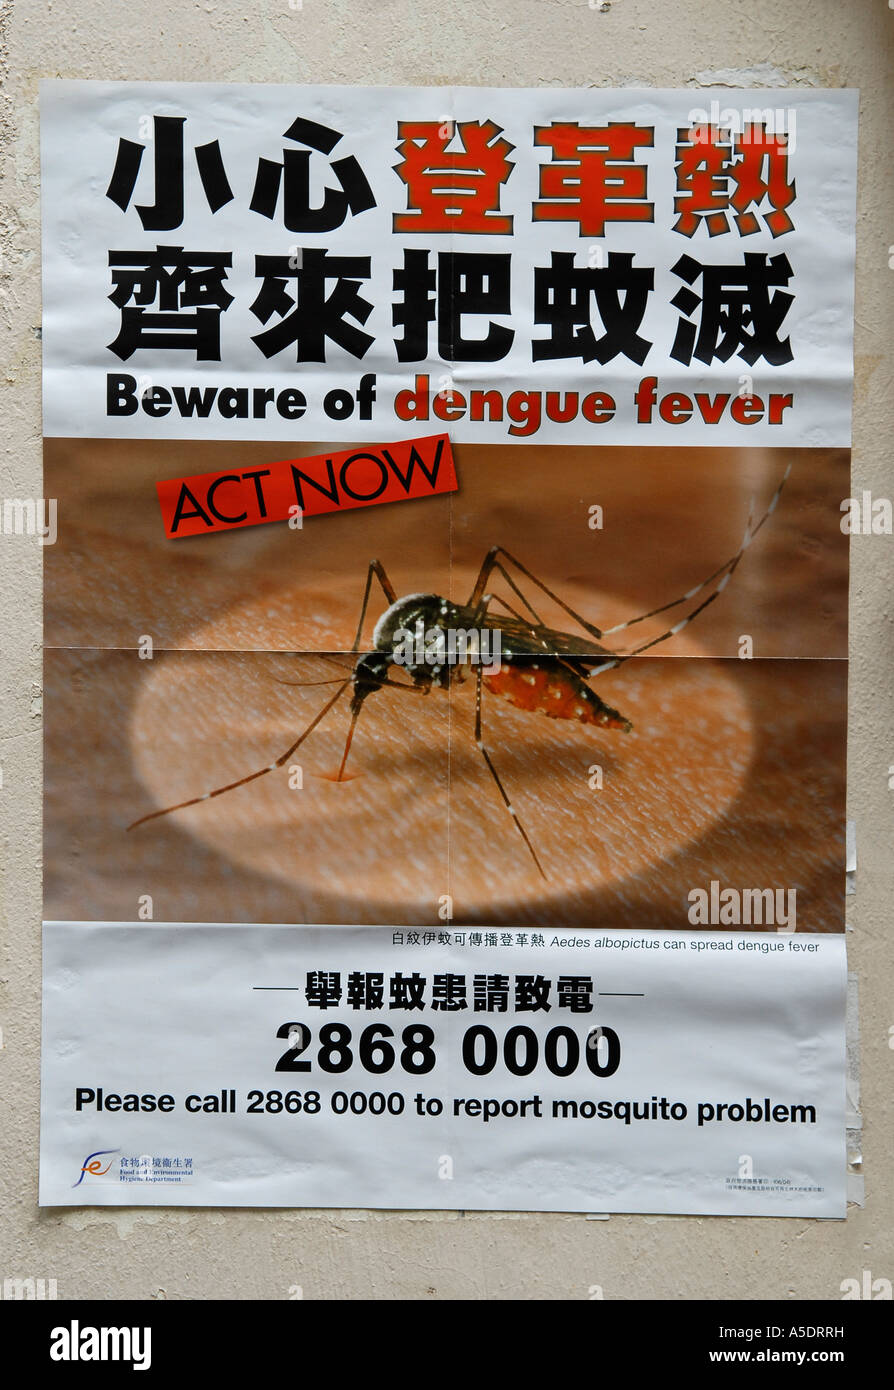 Dengue fever warning notice in Hong Kong China Stock Photo